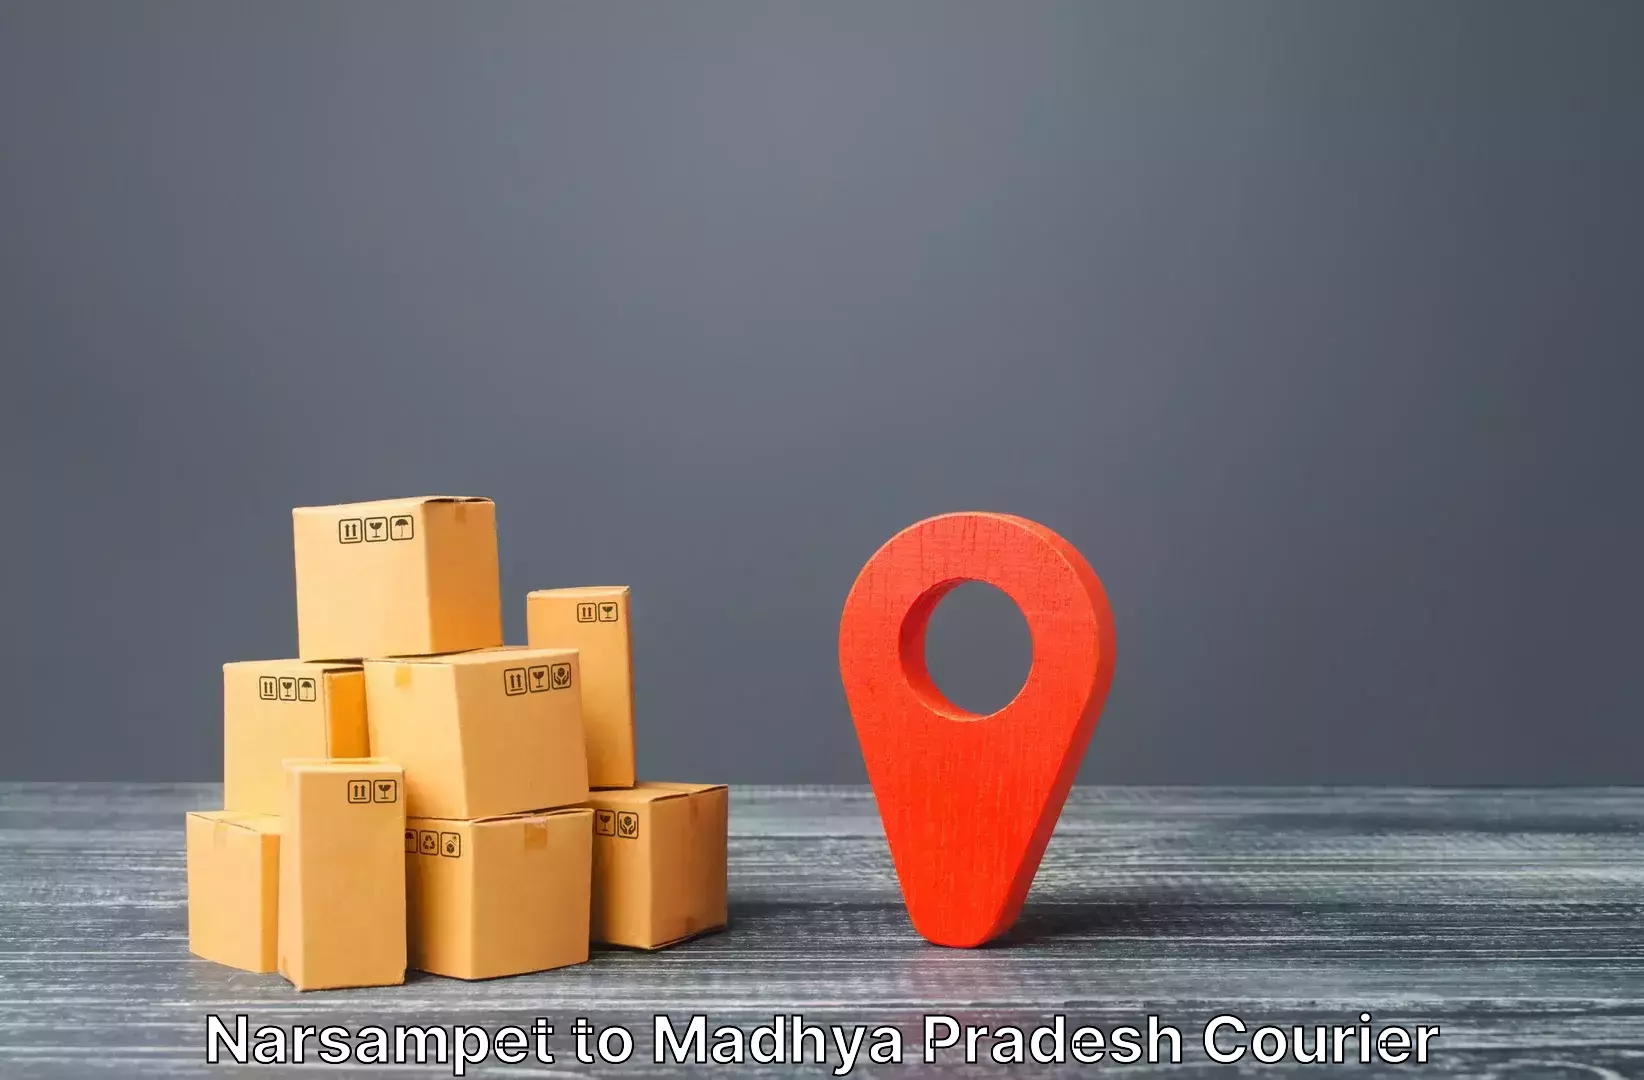 Luggage forwarding service Narsampet to Chhindwara